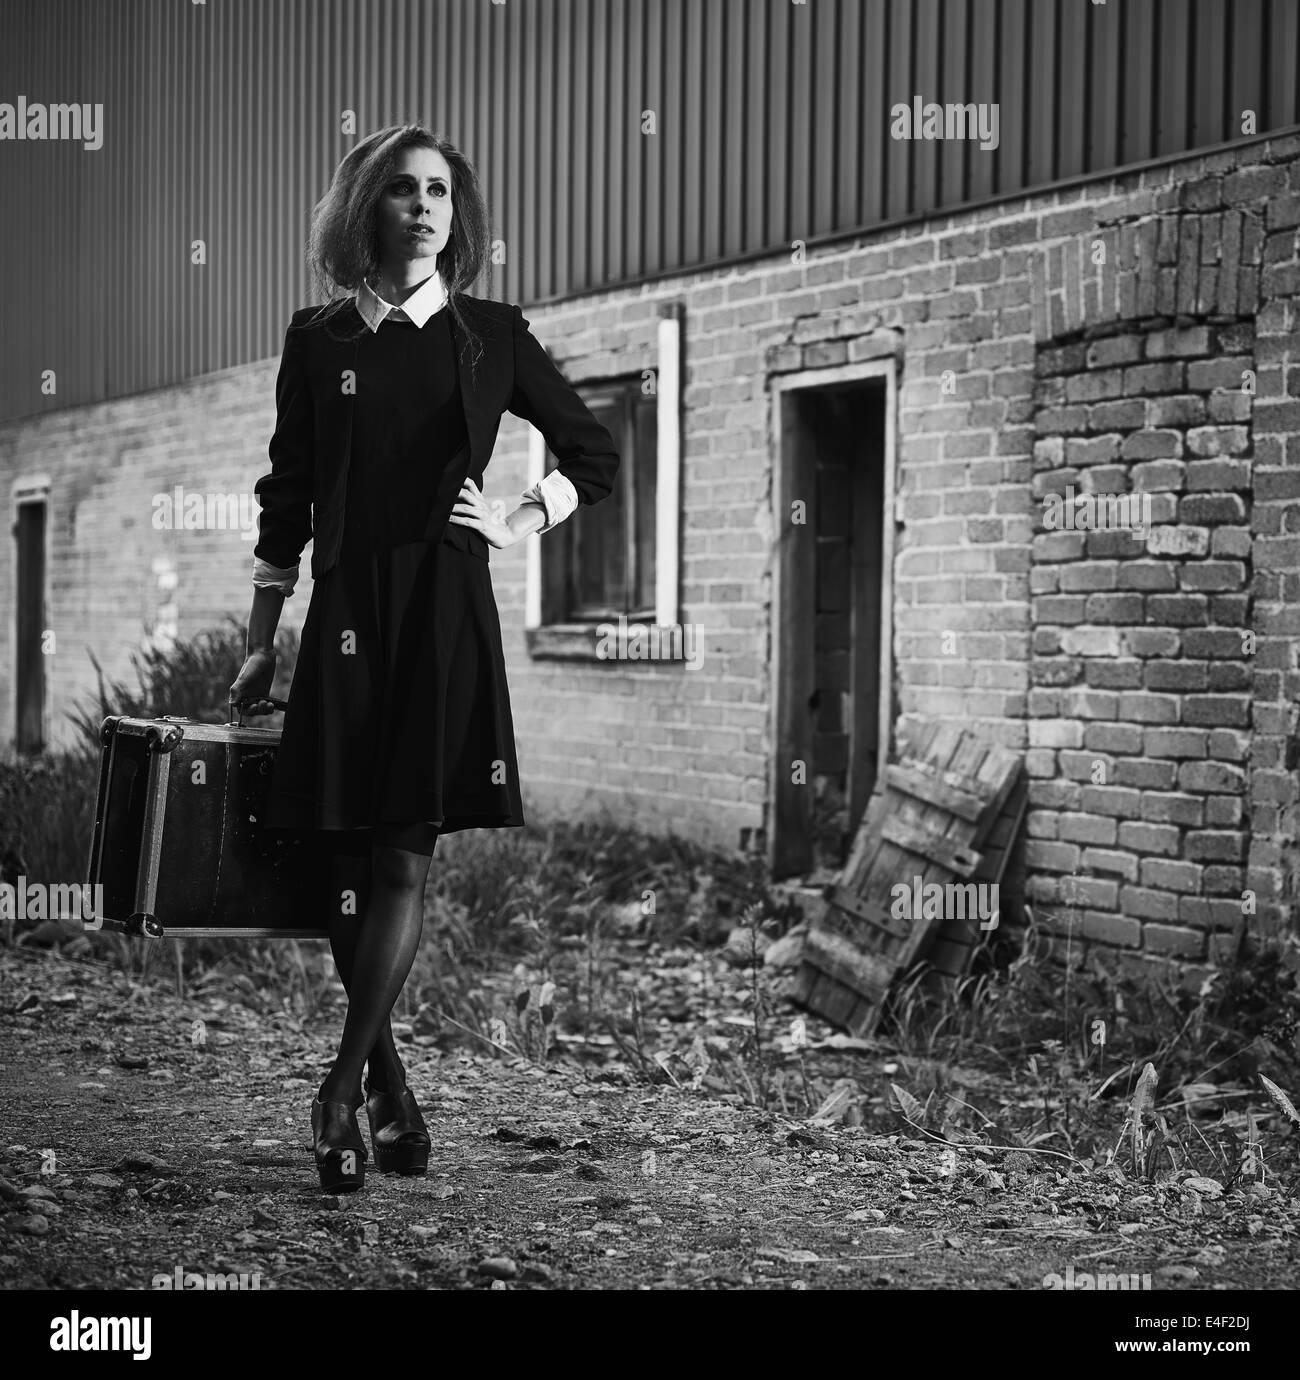 Modebewusste Junge Frau Mit Ihrem Koffer Alte Landliche Szene Schwarz Weiss Bild Stockfotografie Alamy